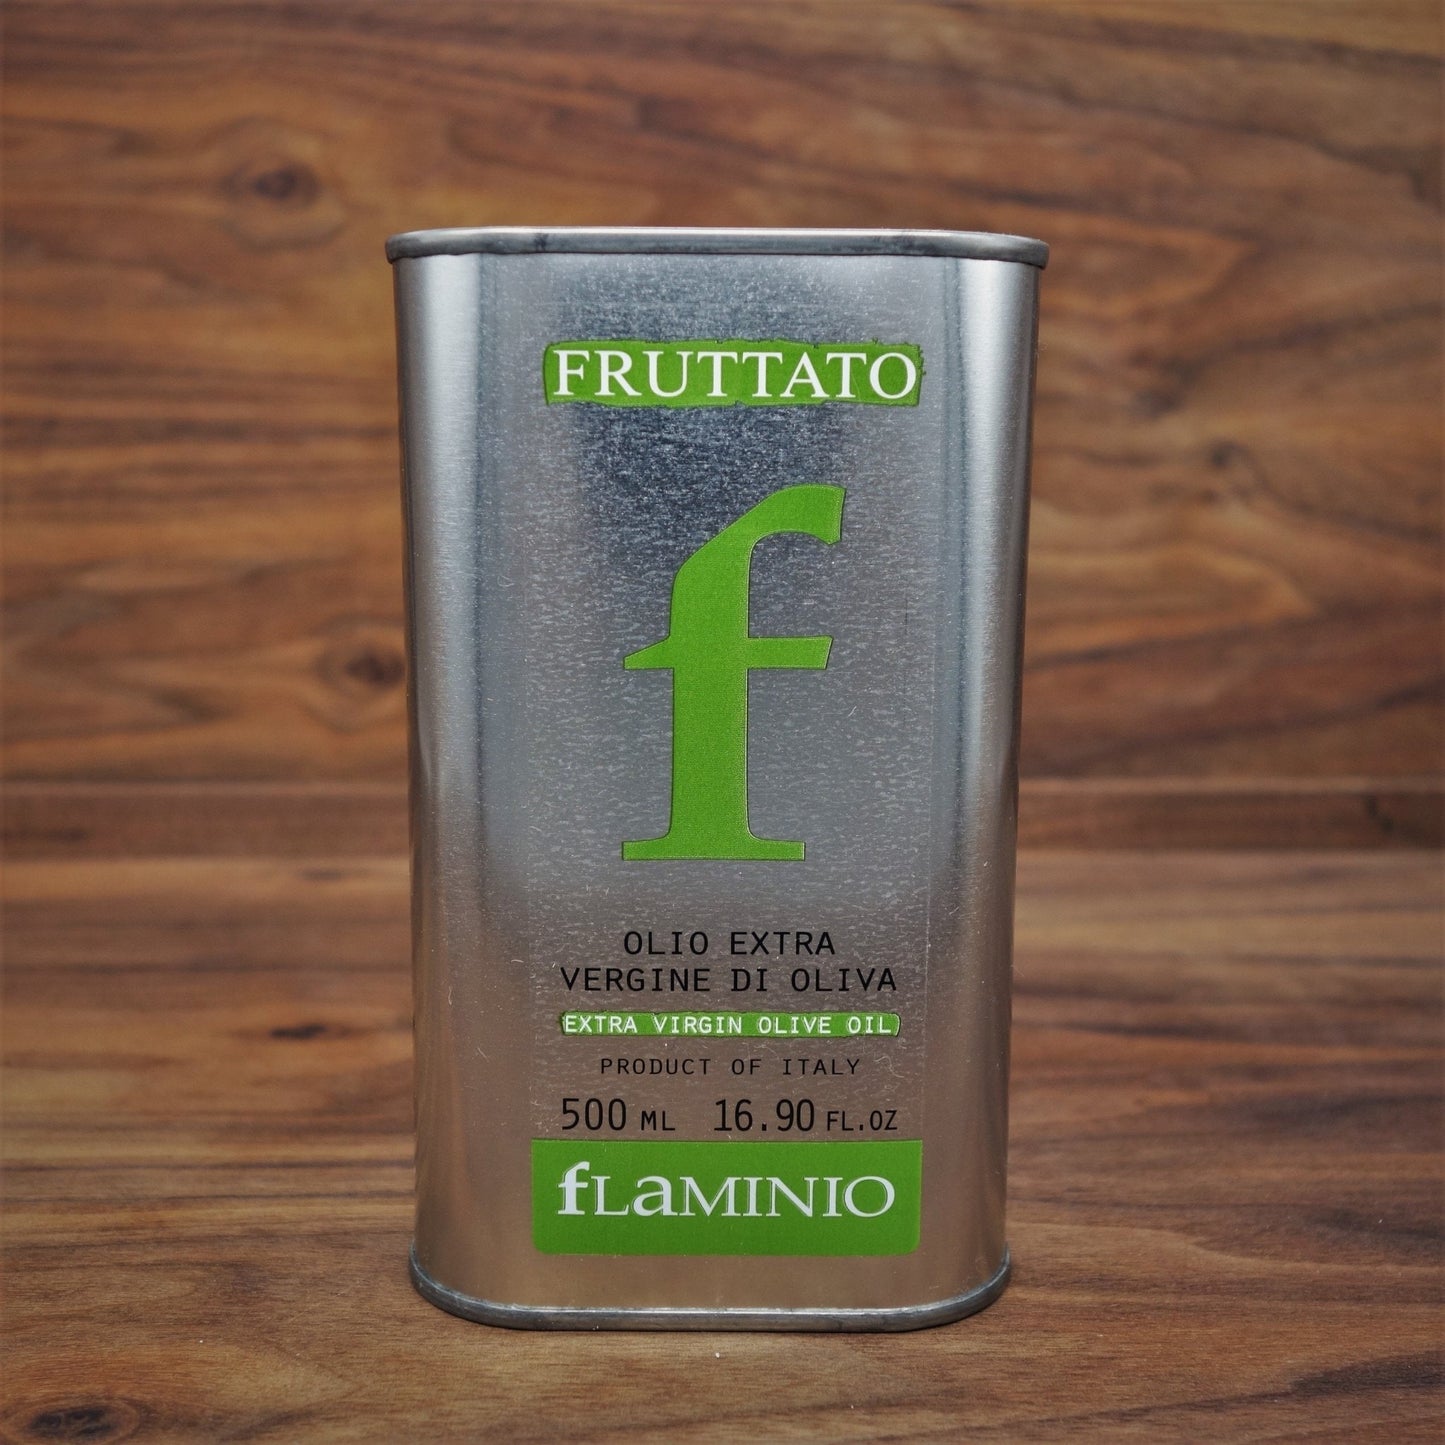 Flaminio Fruttato EVOO - Mongers' Provisions